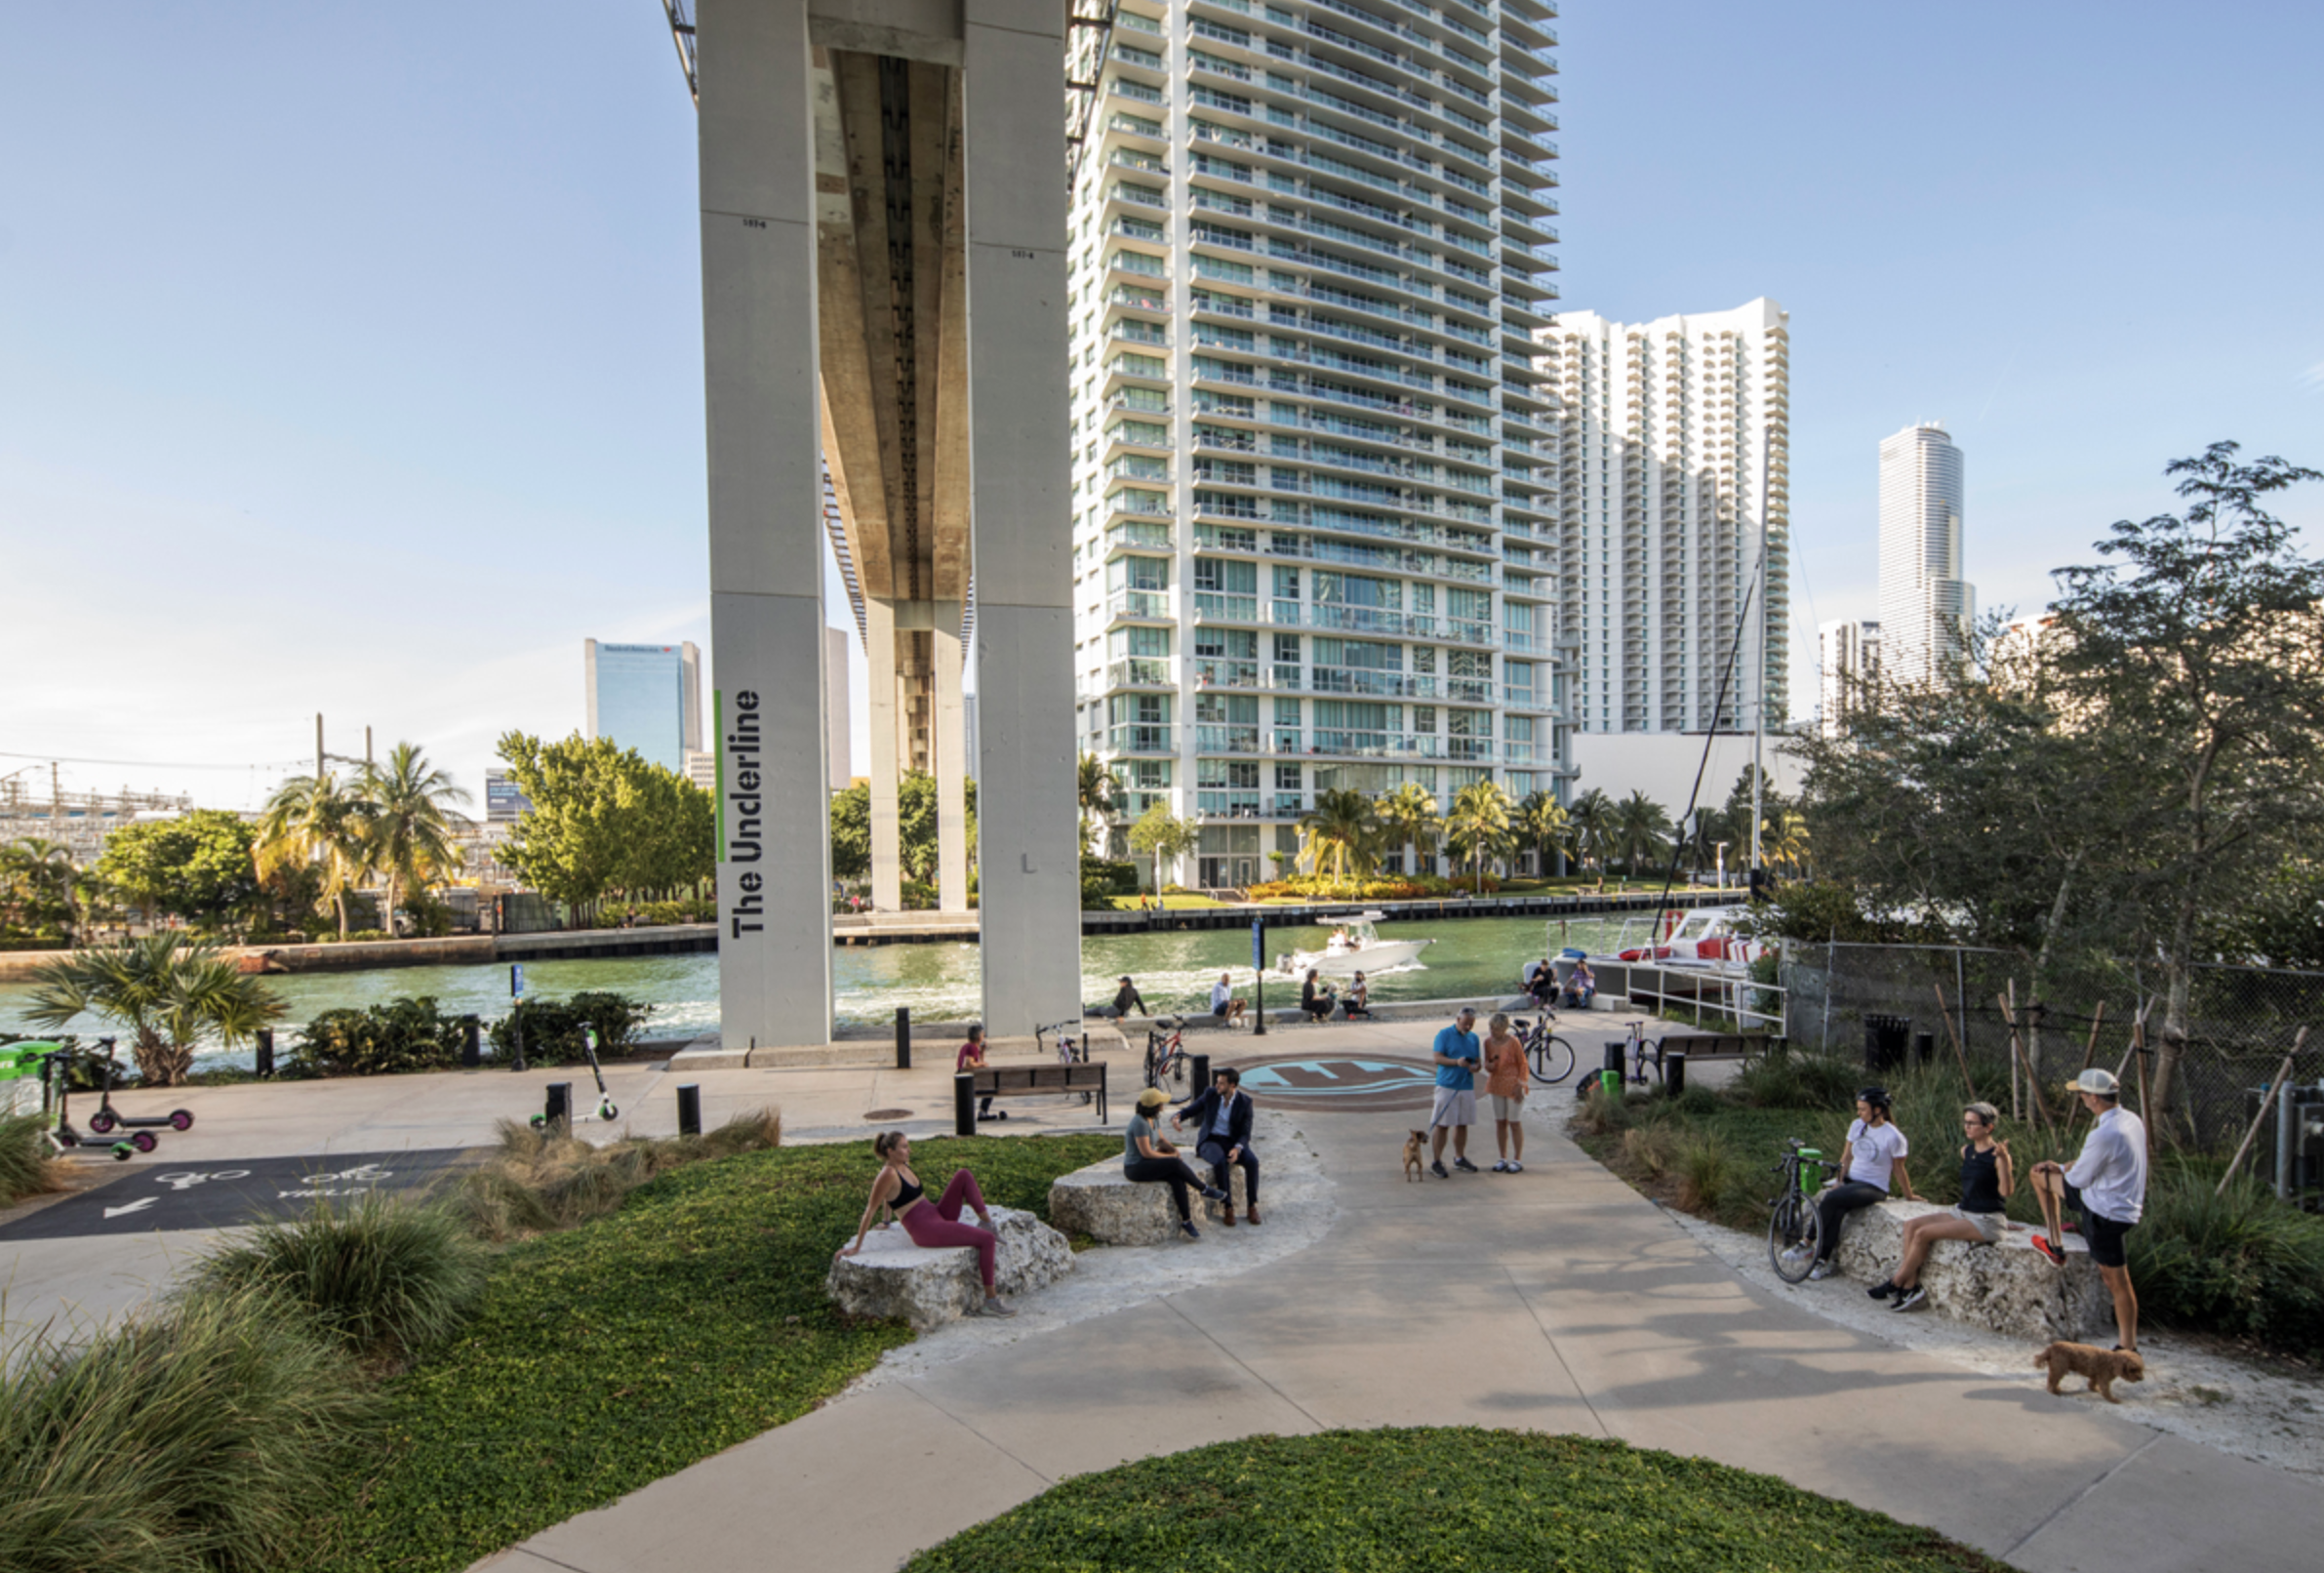 Los emigrados de distintos lugares del mundo que residen en Miami destacaron su alta calidad de vida. (The Underline)